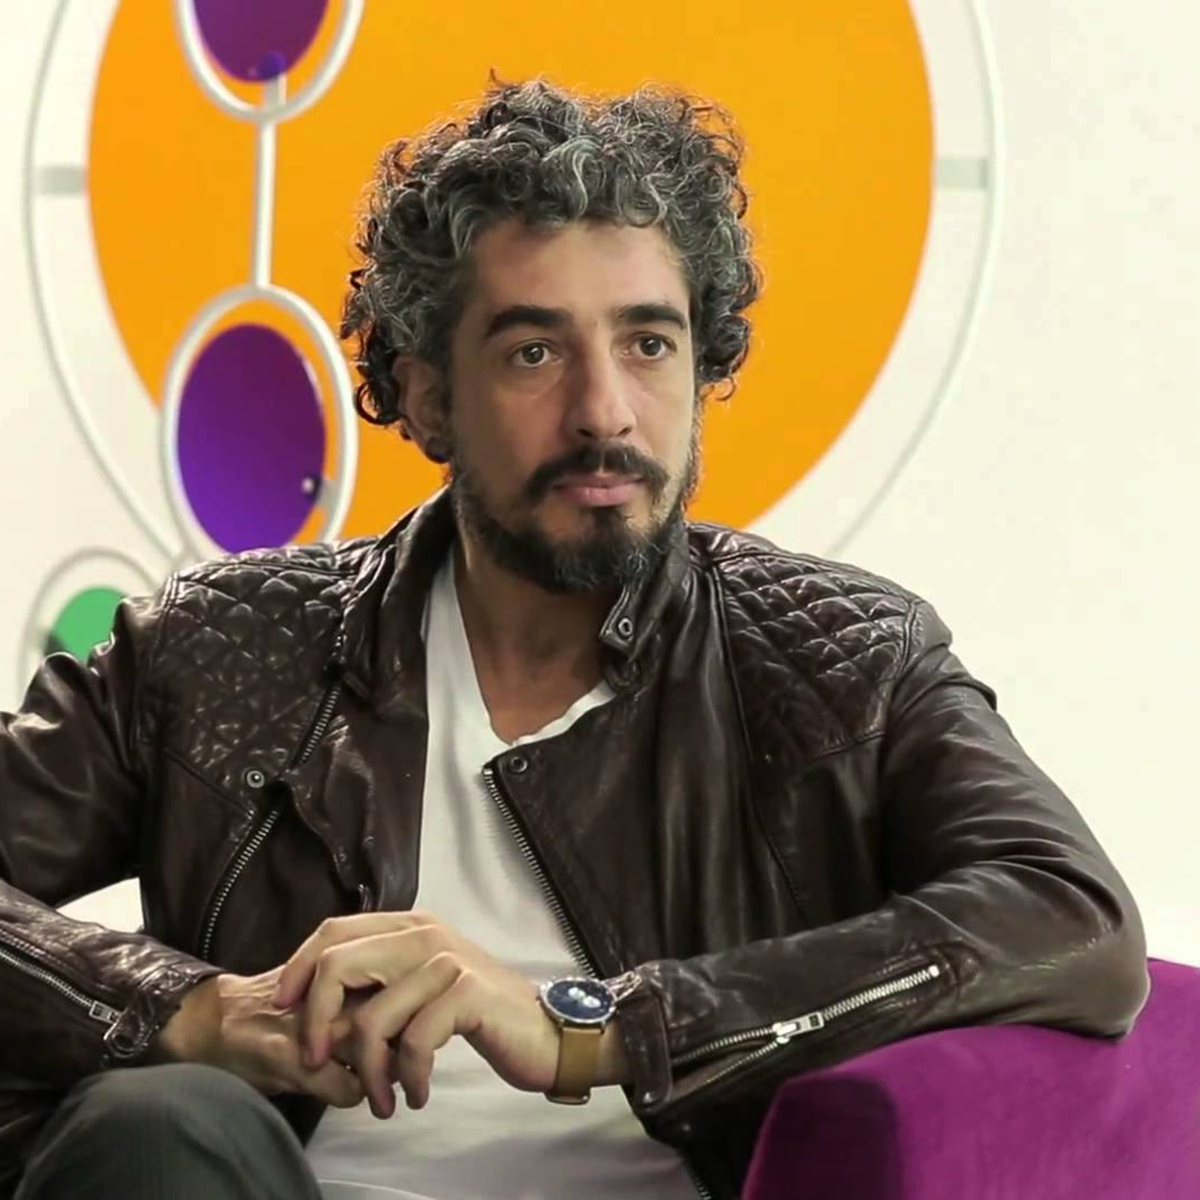 Michel Melamed vai participar da série “Pouso Alegre” - Noticiasdetv.com